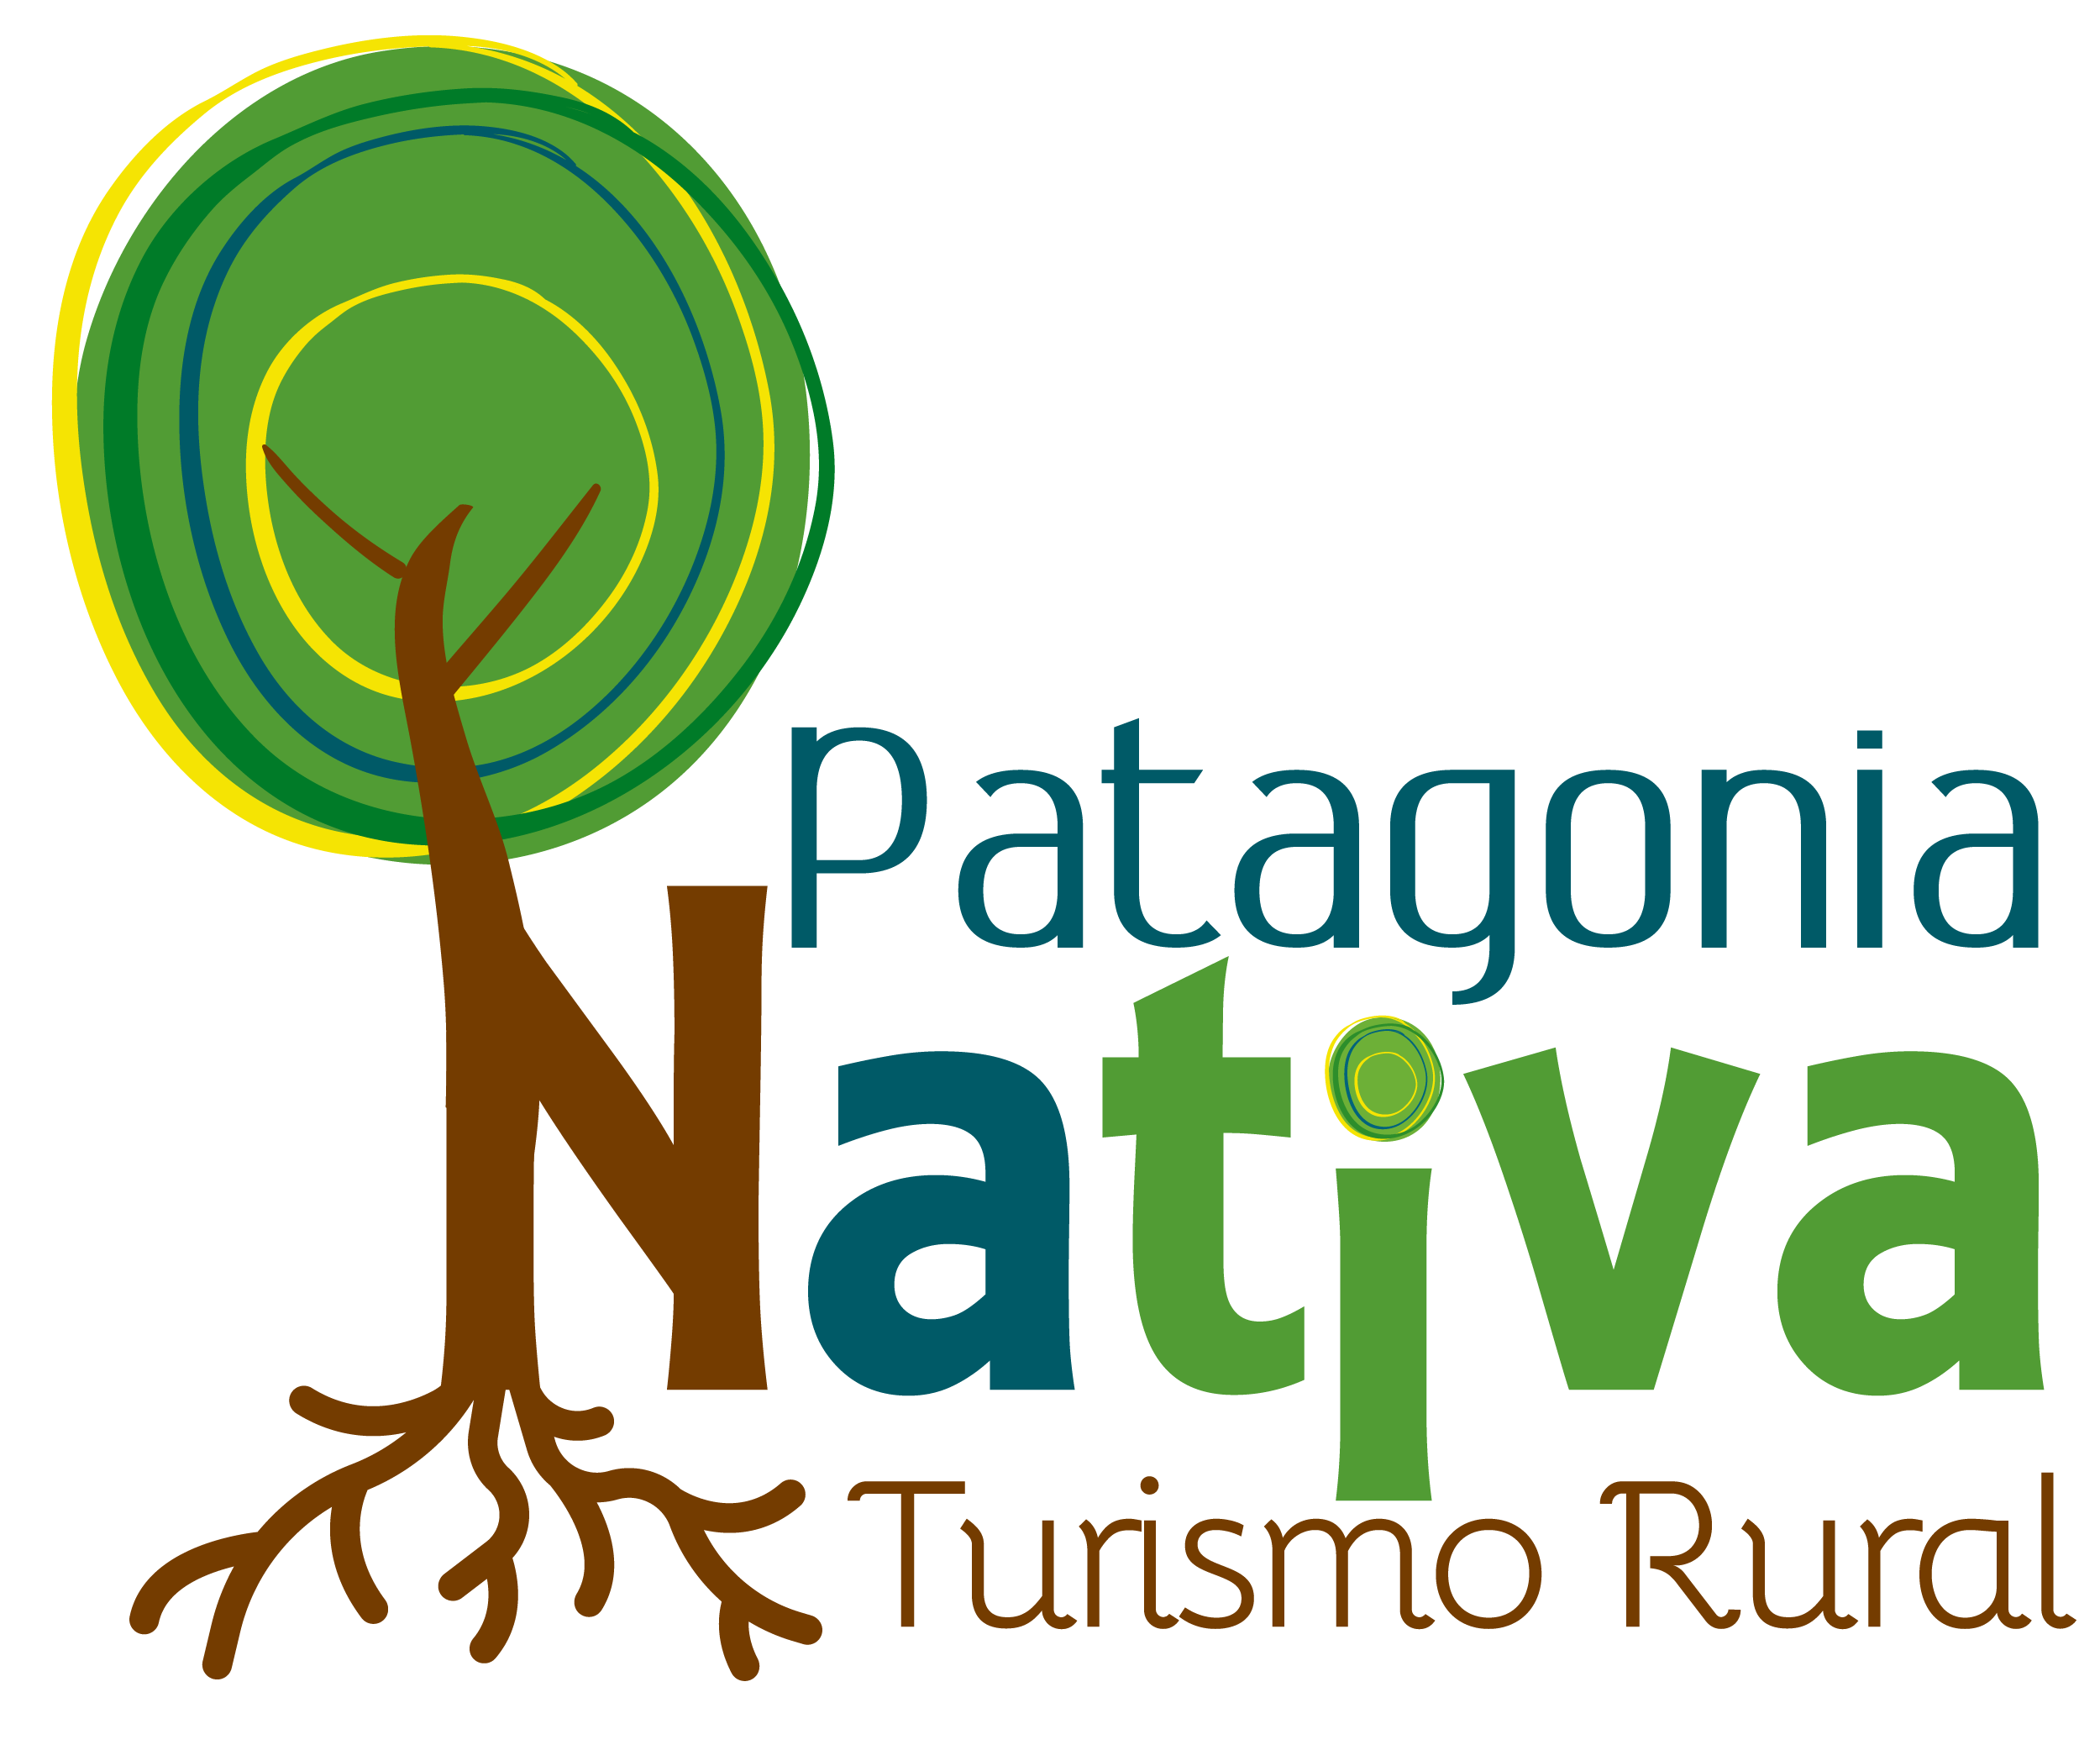 Patagonia Nativa